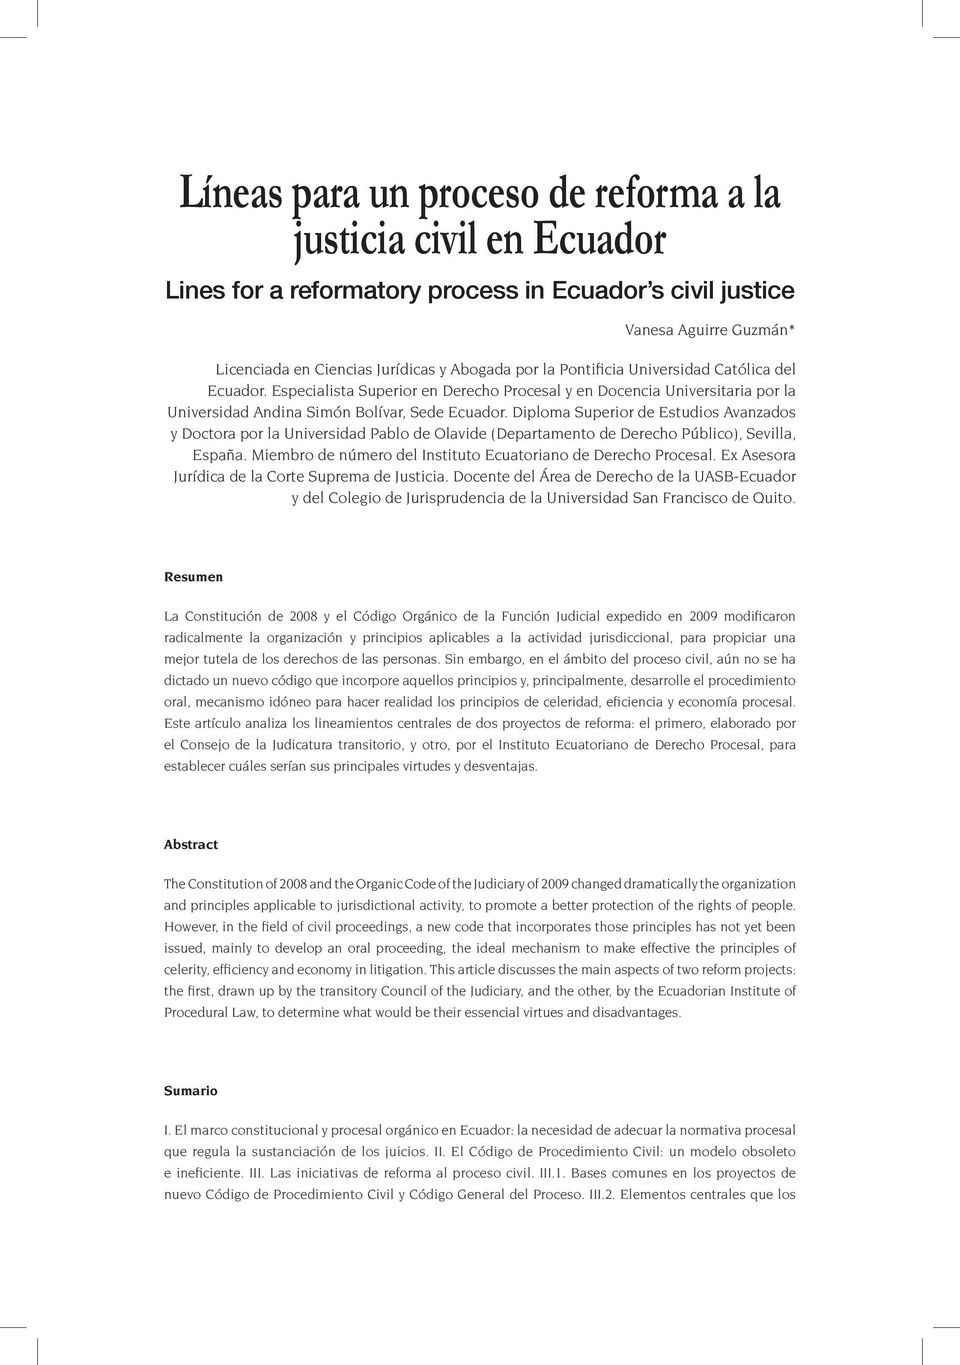 Diploma Superior de Estudios Avanzados y Doctora por la Universidad Pablo de Olavide (Departamento de Derecho Público), Sevilla, España.